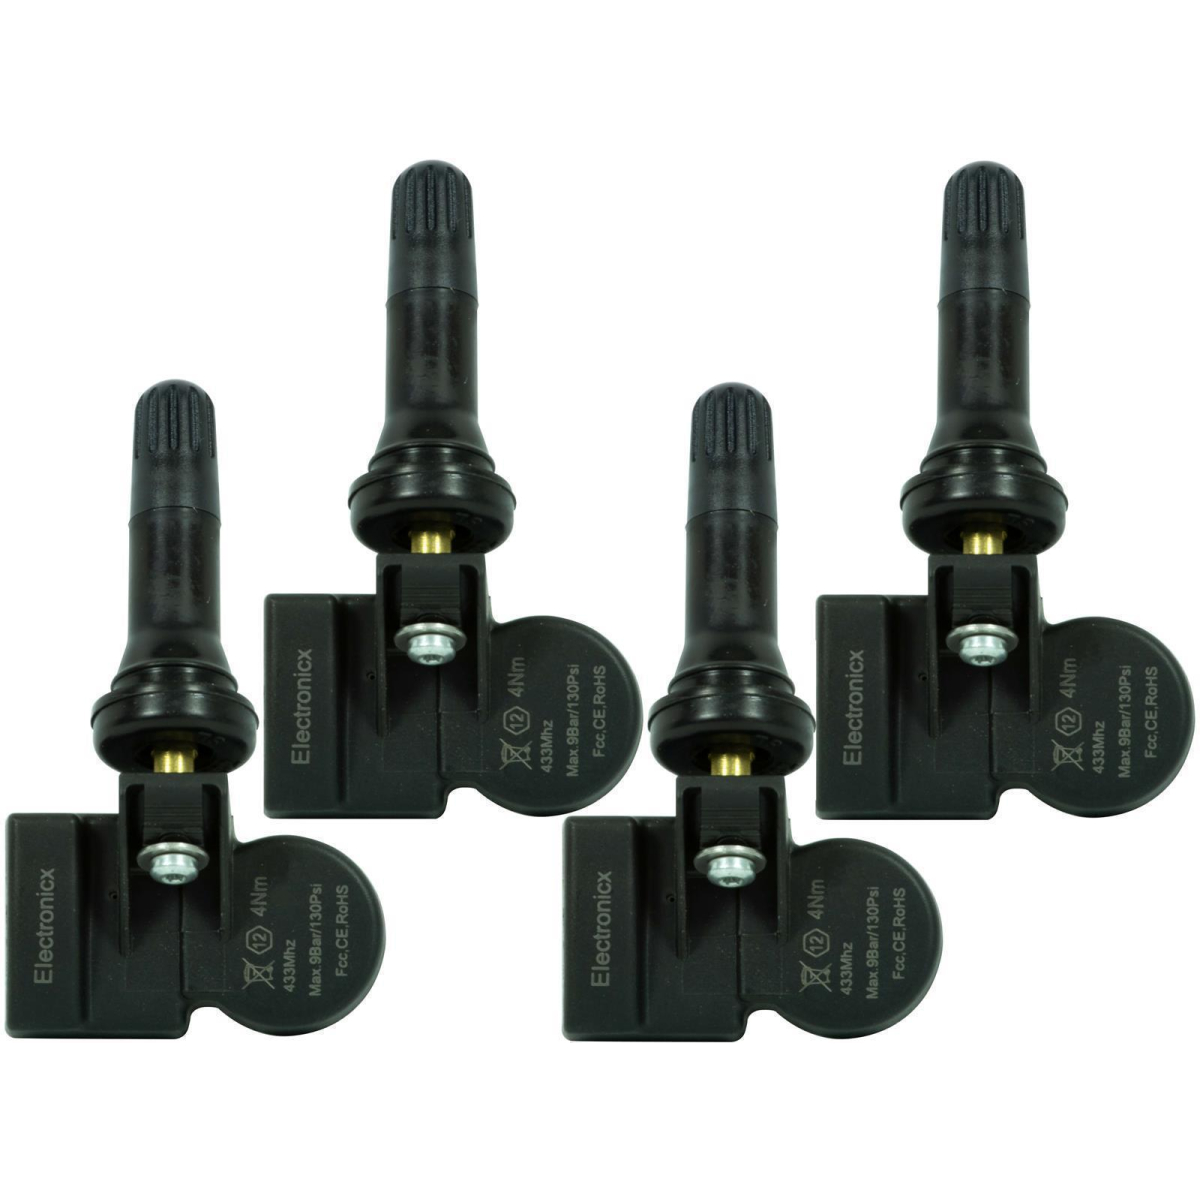 4 tire pressure sensors rdks sensors rubber valve for Ford F-150 P415 01.2009-12.2014